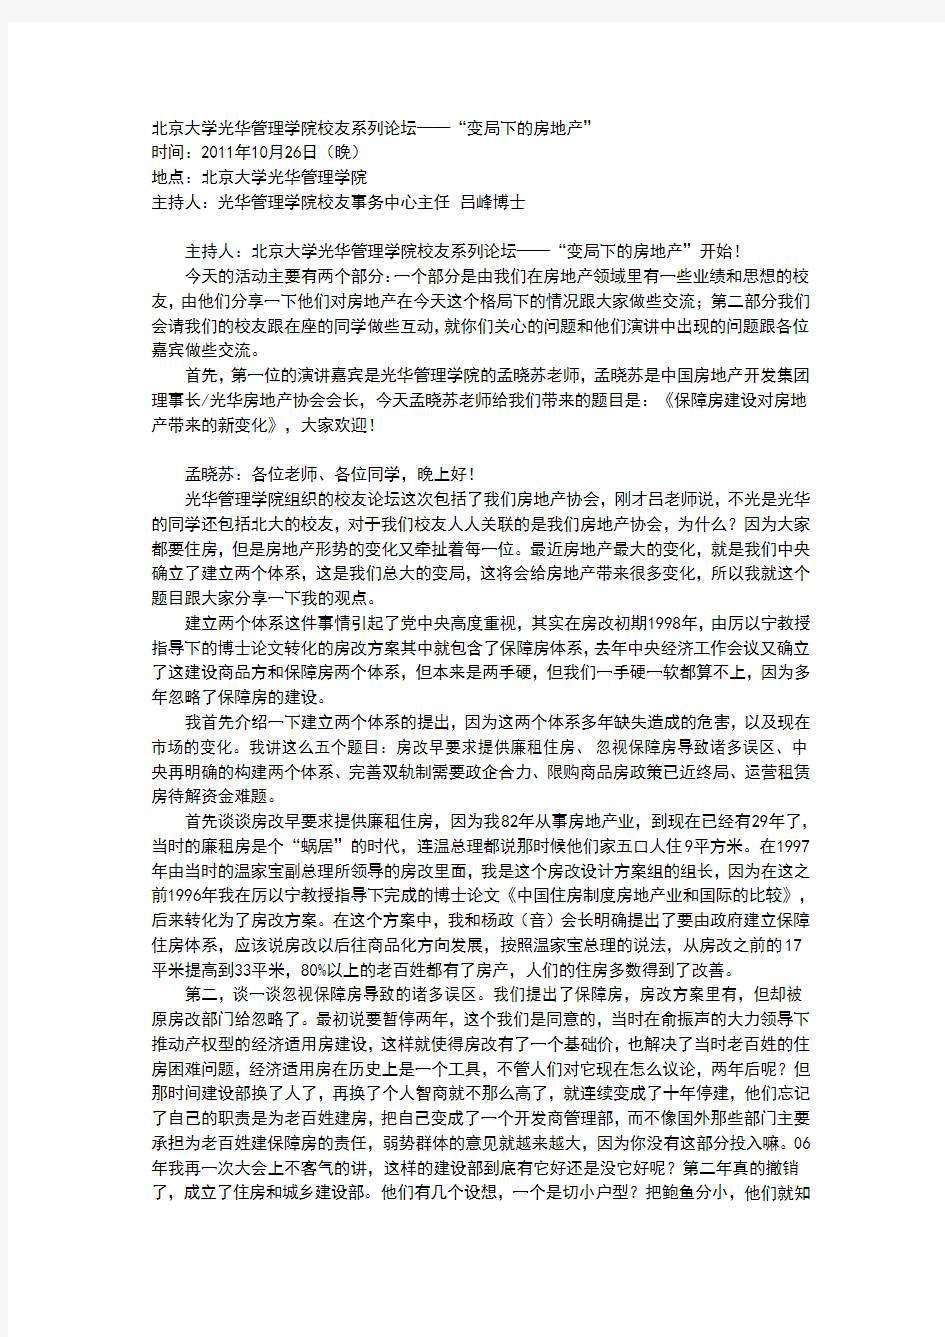 北京大学光华管理学院校友系列论坛——“变局下的房地产”